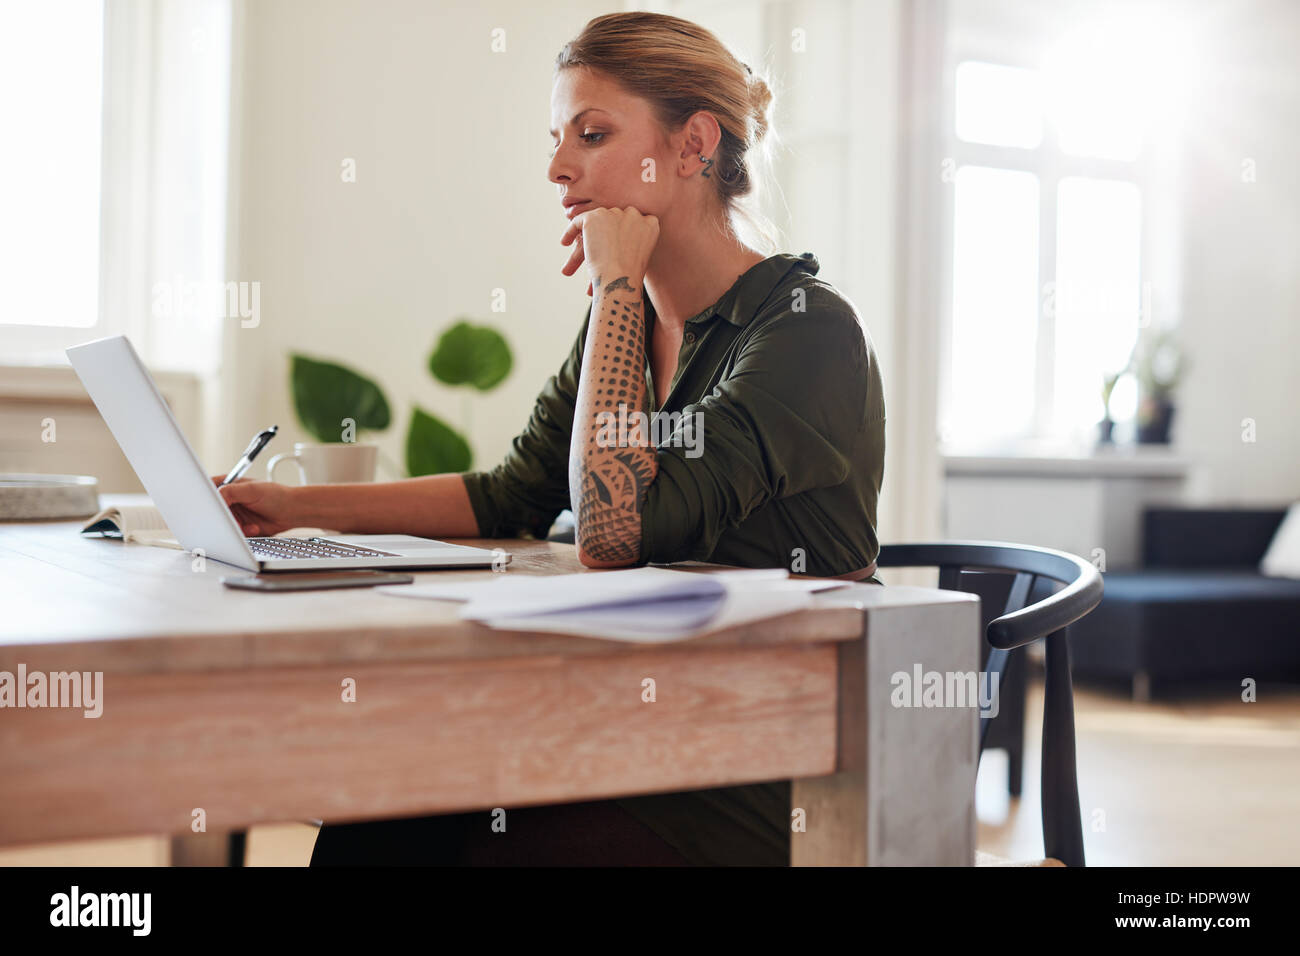 Vue latérale shot of young woman working on laptop at home office. Les femmes de race blanche assis à table à l'aide d'ordinateur portable. Banque D'Images